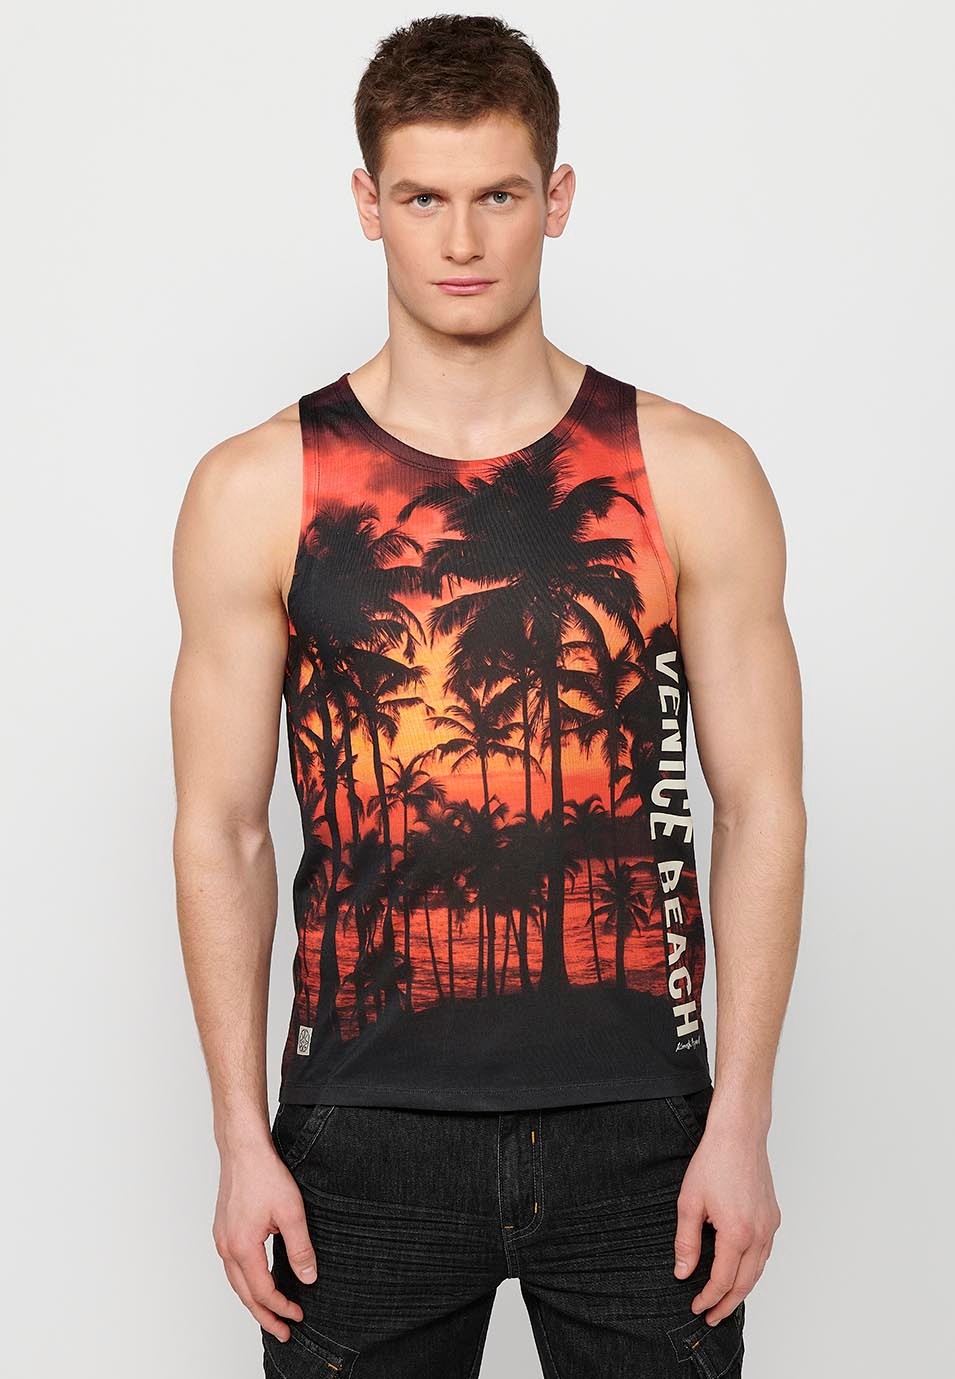 Débardeur, imprimé Venice Beach, coloris noir pour homme